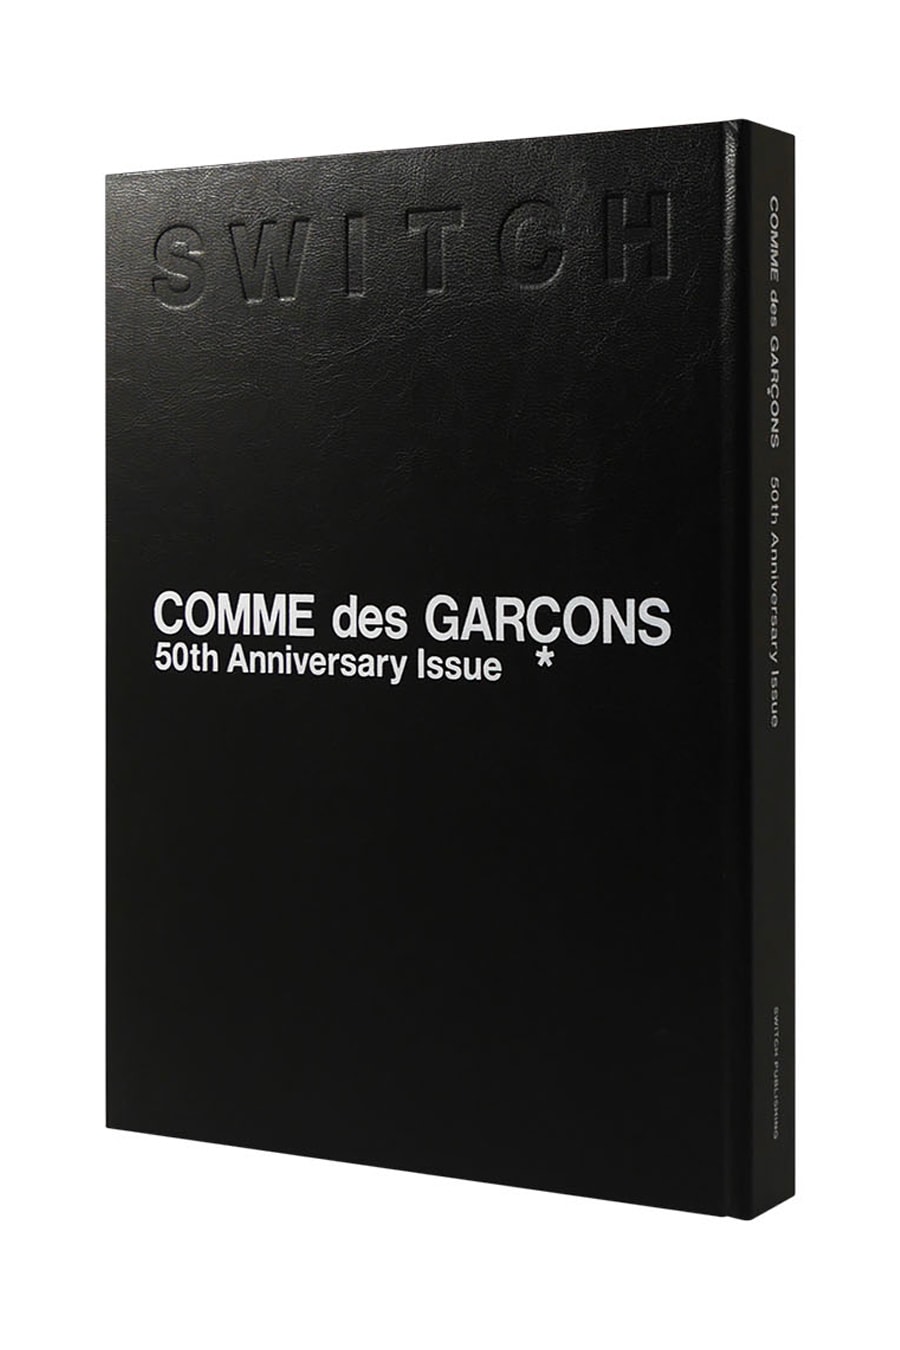 Журнал Switch выпустит выпуск, посвященный 50-летию COMME des GARÇONS